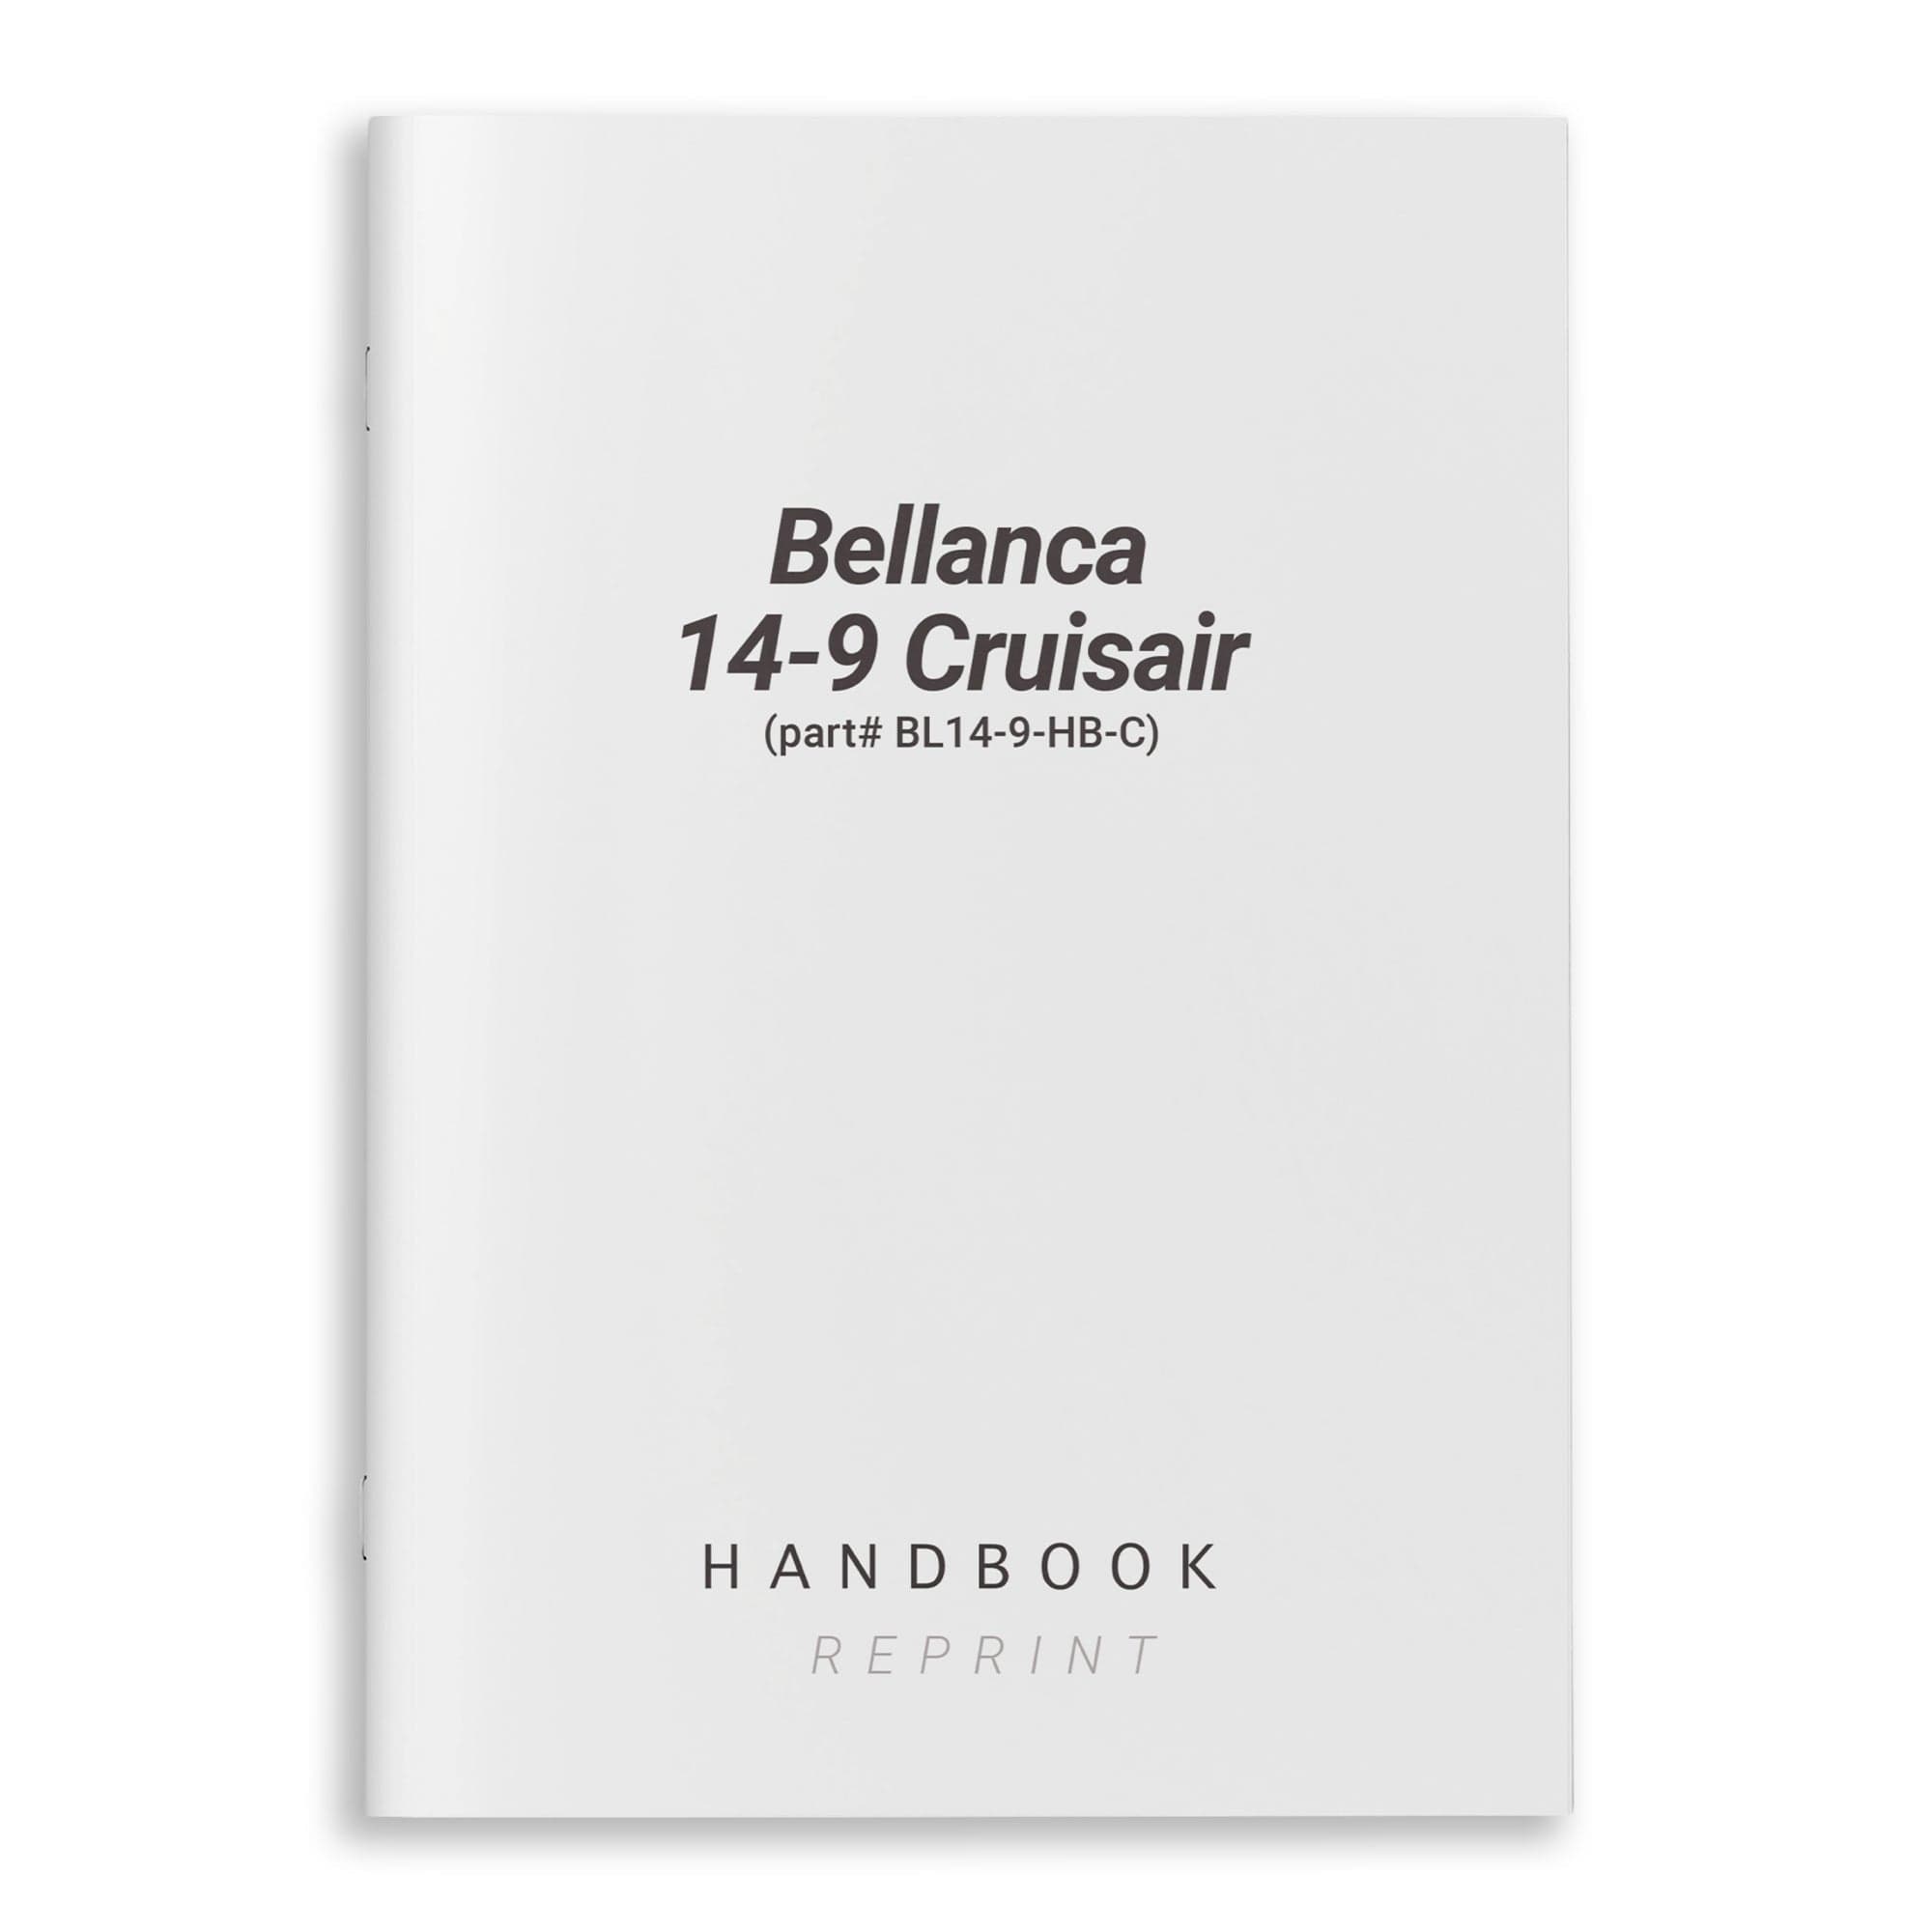 Bellanca 14-9 Cruisair Handbook (part# BL14-9-HB-C) - PilotMall.com